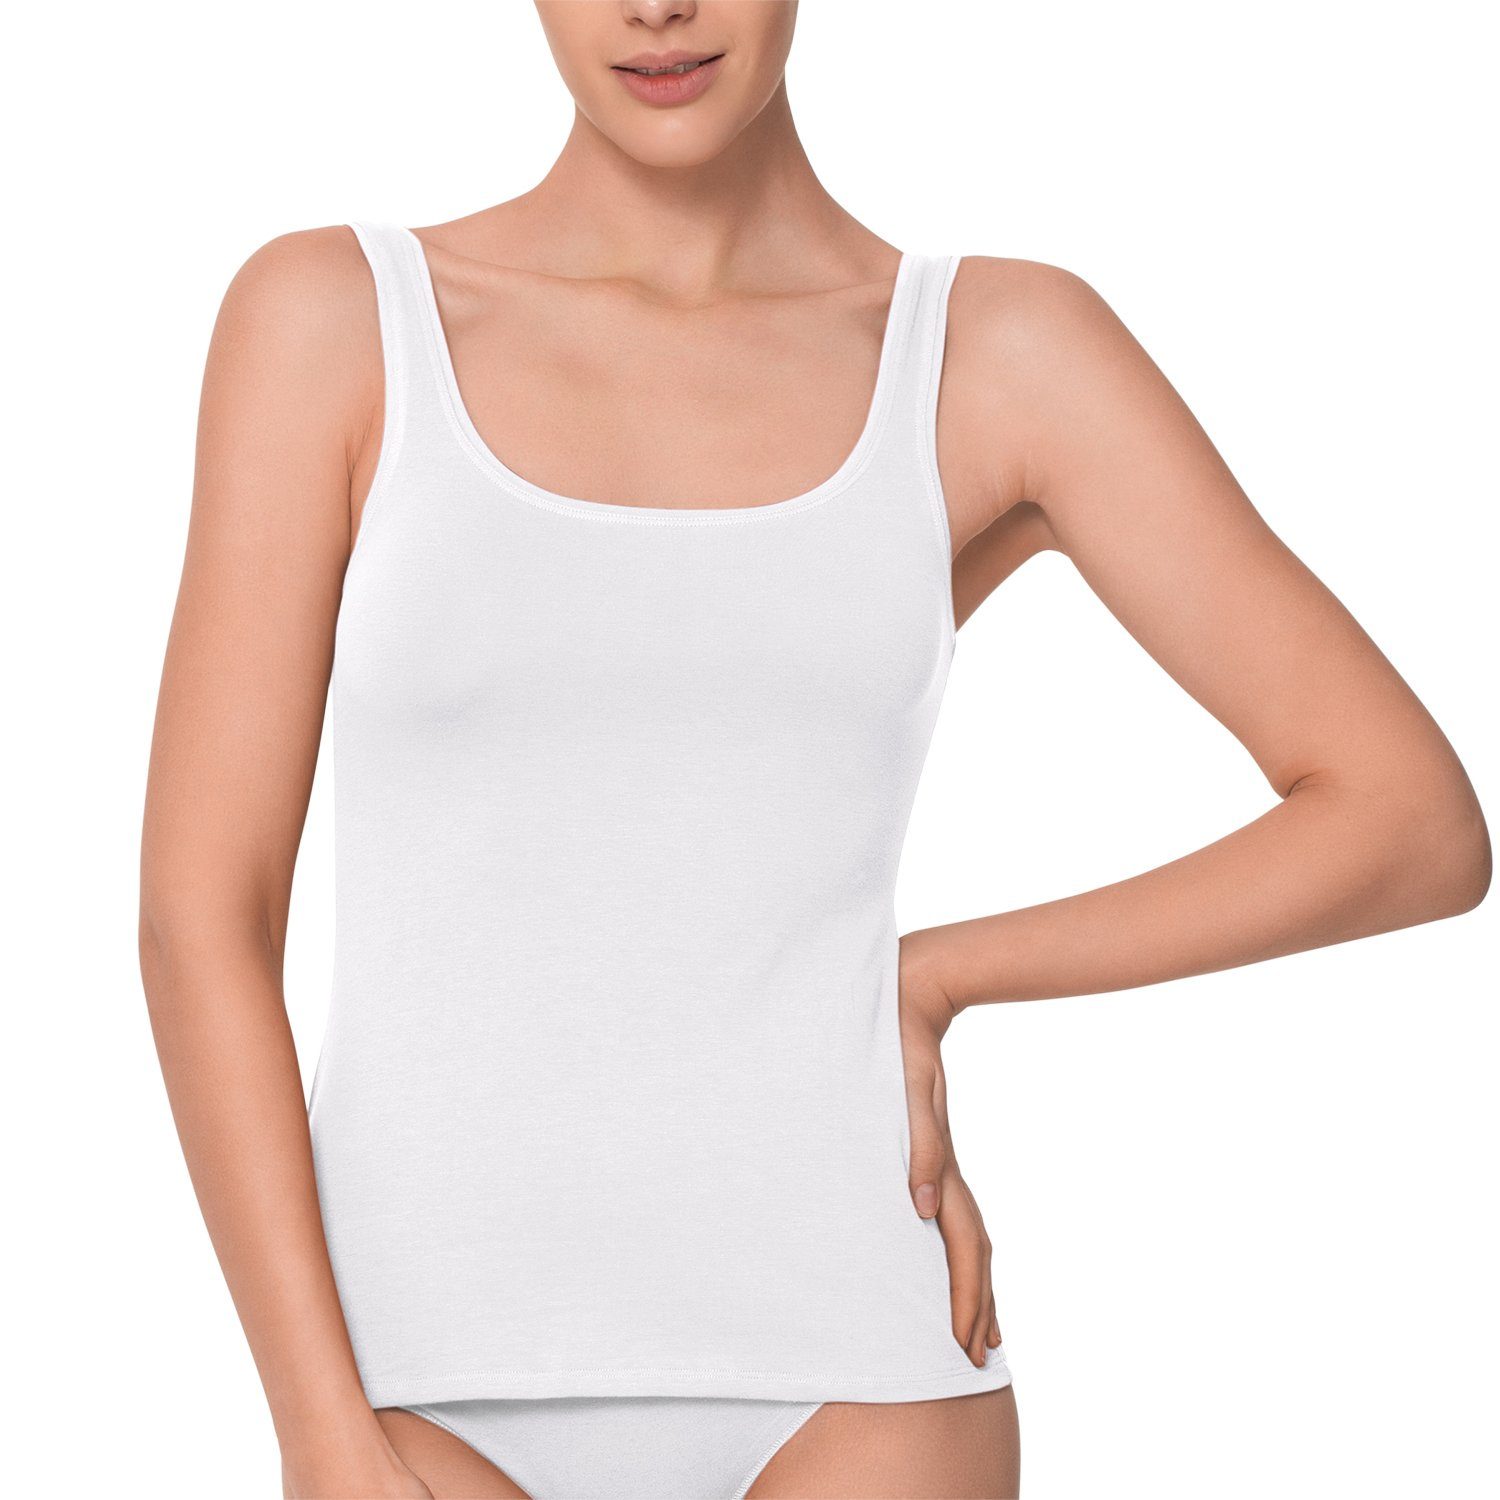 celodoro Unterhemd Damen Basic Tanktop Achselhemd (1 Stück) aus Baumwolle Weiß